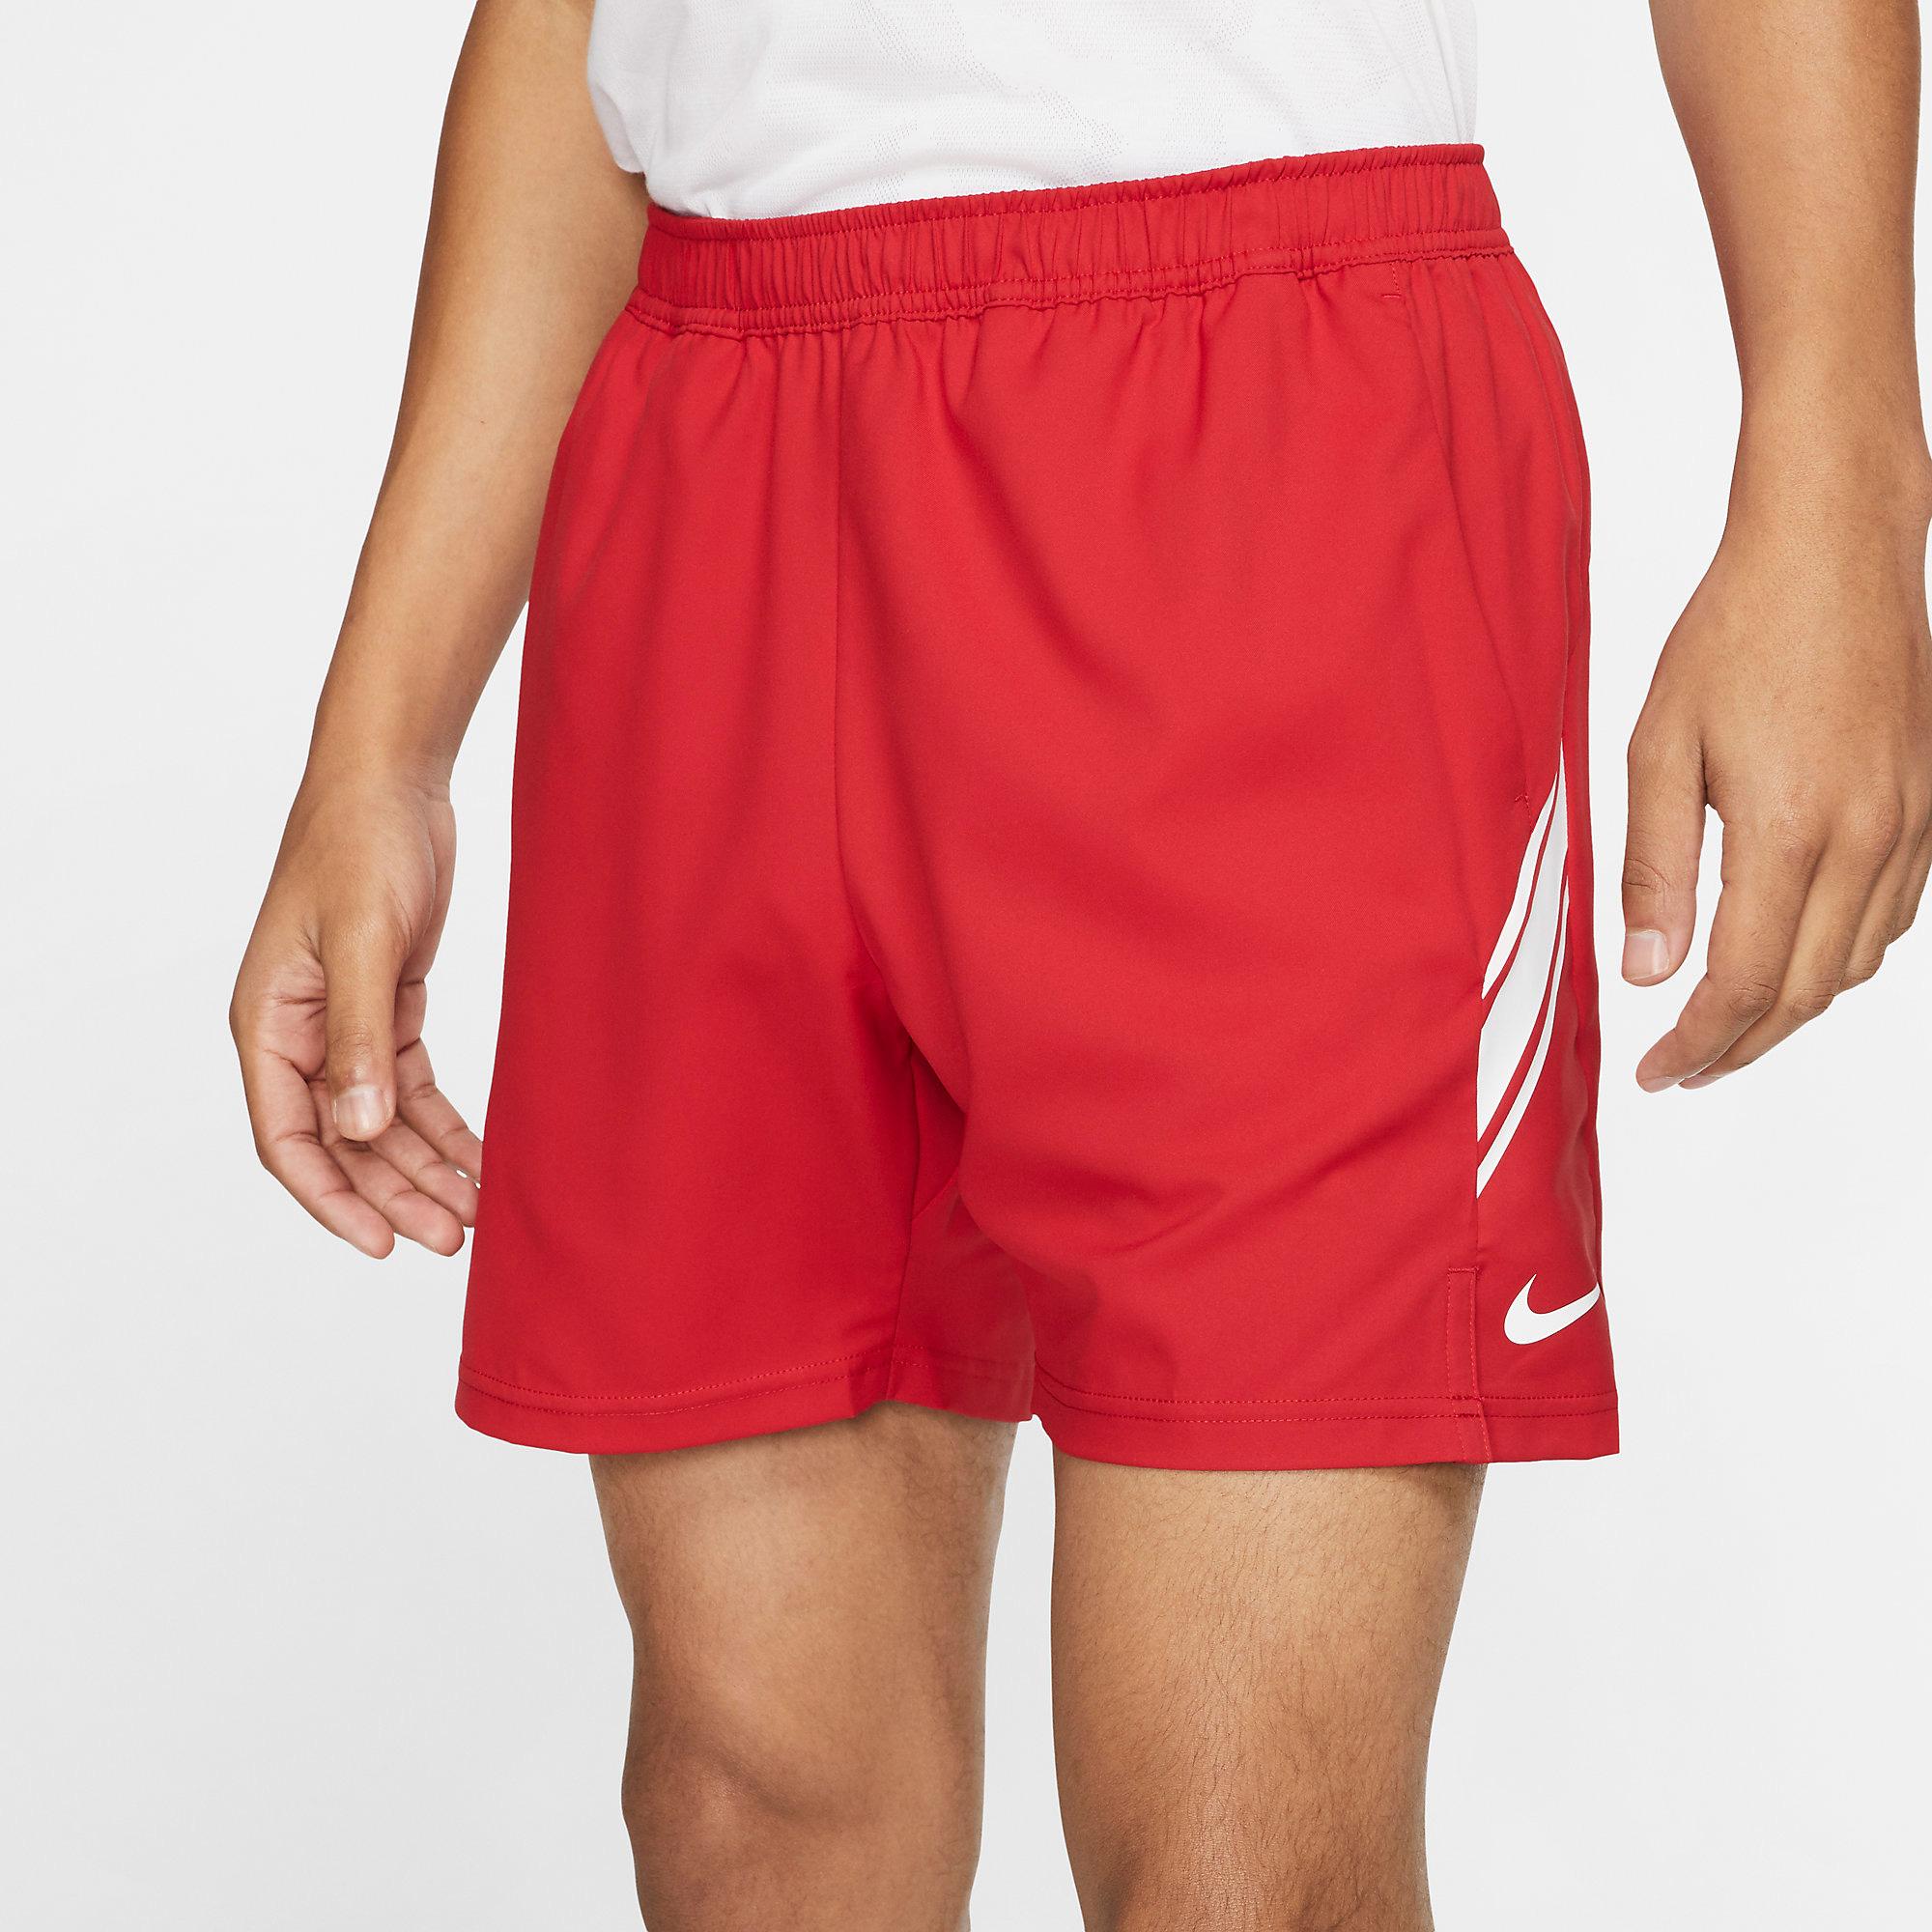 Nike Mens Dri-FIT 7 Inch Tennis Shorts - Gym Red/White - Tennisnuts.com